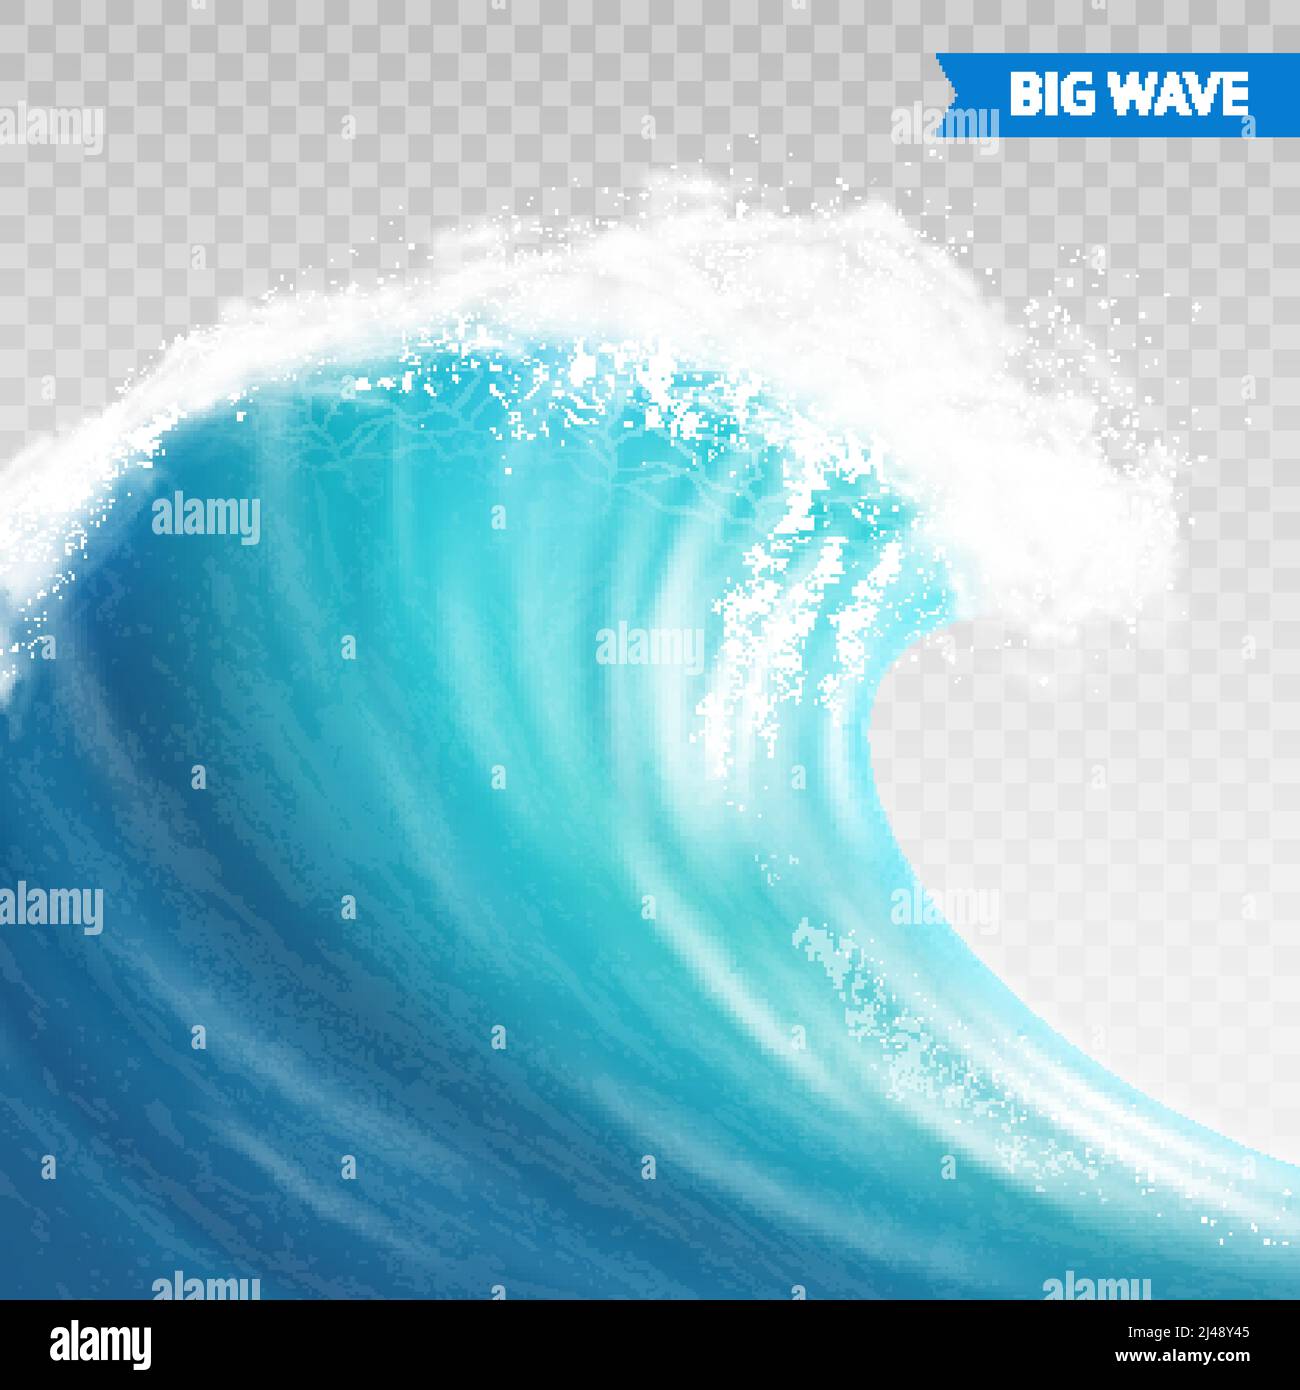 Gran ola marina o oceánica con spray, espuma sobre cresta y reflexión sobre fondo transparente ilustración vectorial Ilustración del Vector